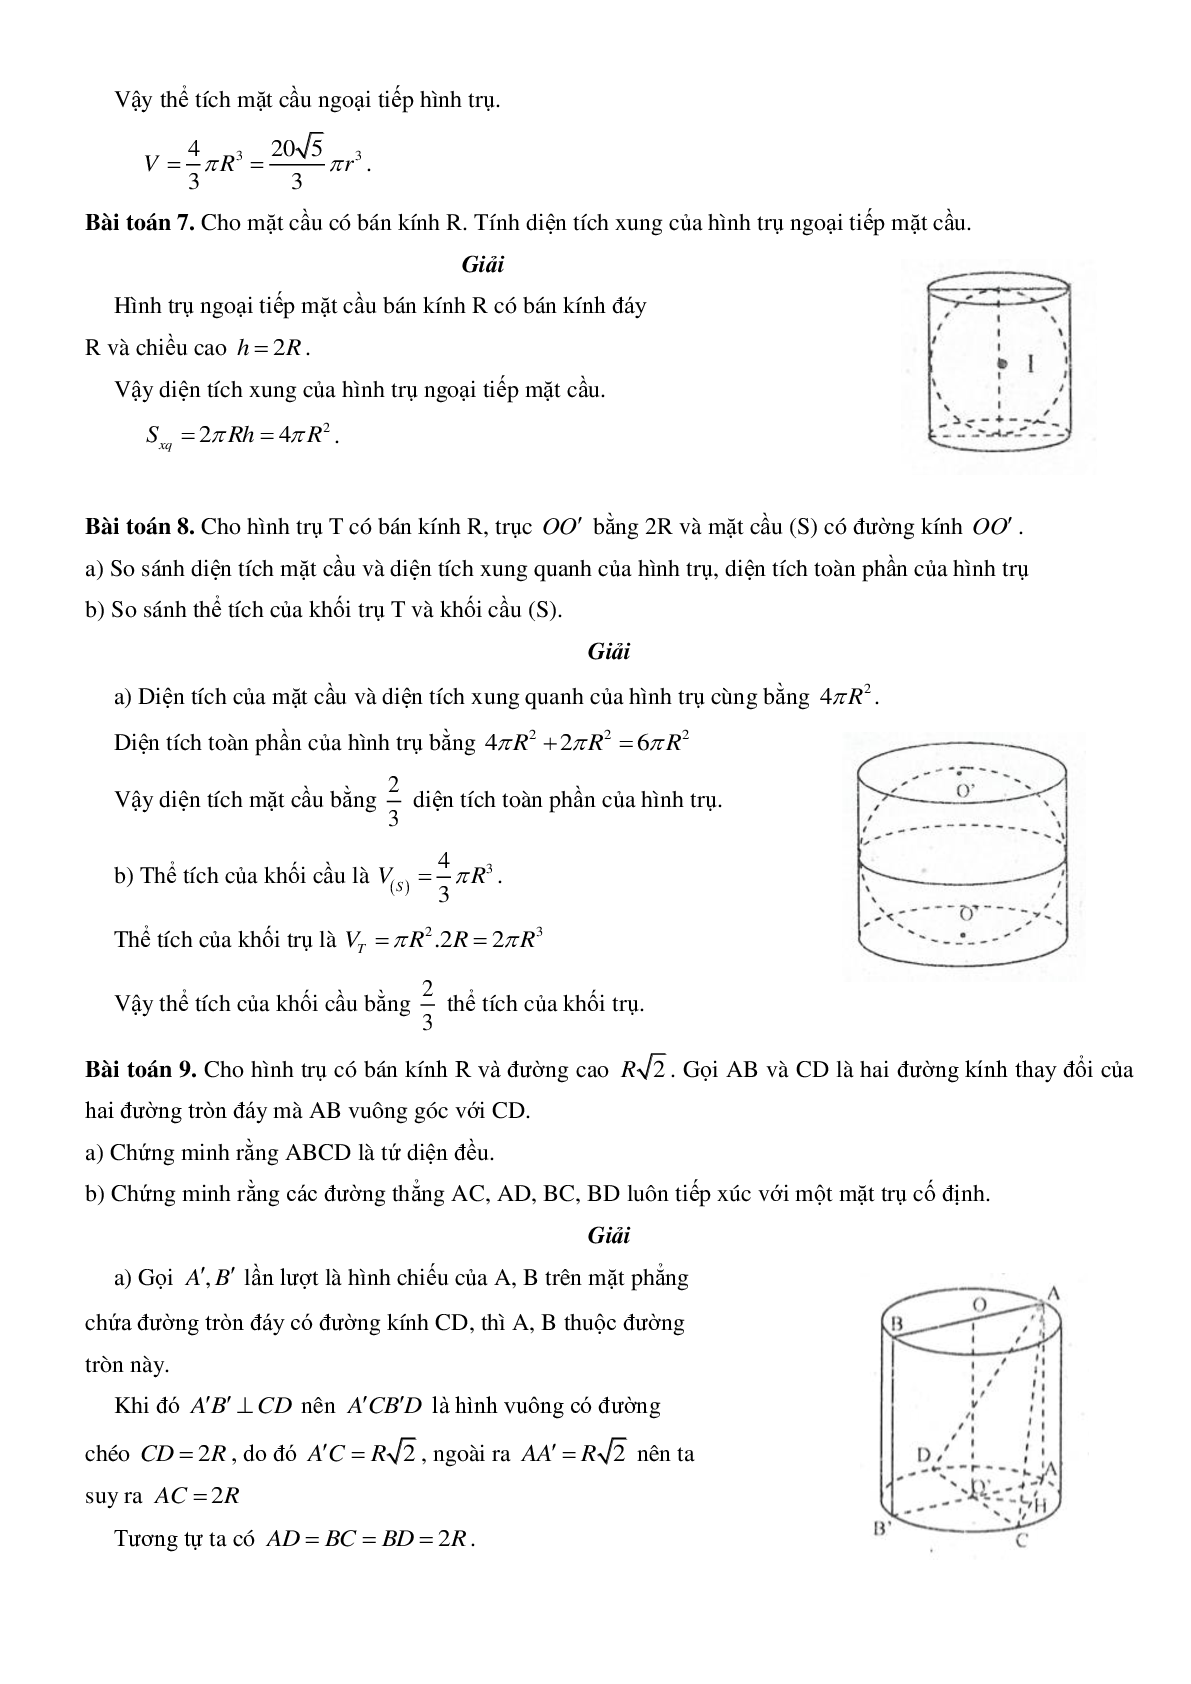 Mặt trụ - Hình trụ - Khối trụ - Ôn thi THPT QG môn toán (trang 7)